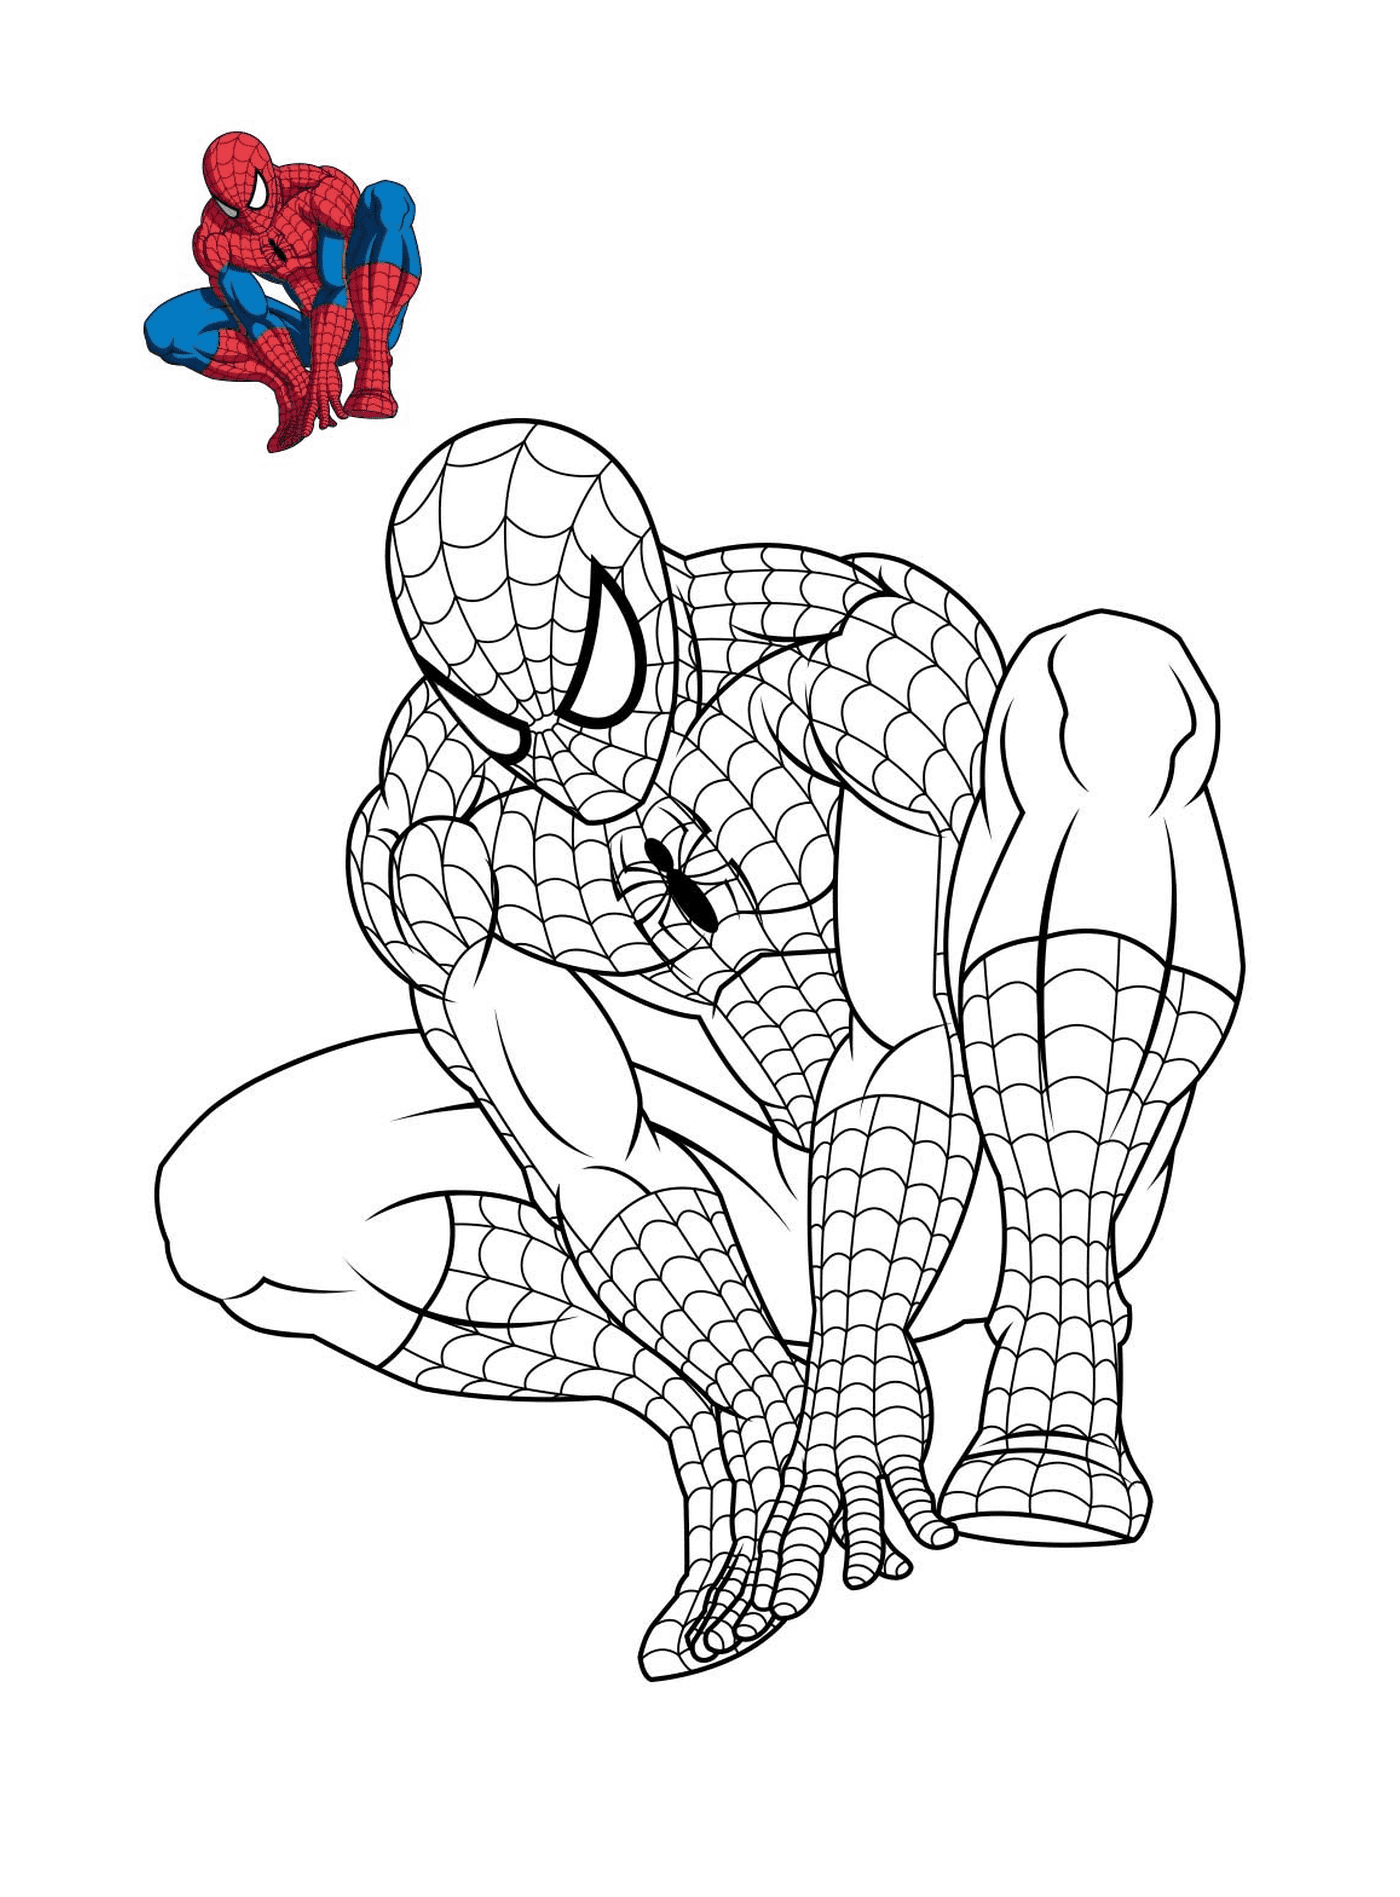  Spider-Man denkt über die Färbung 